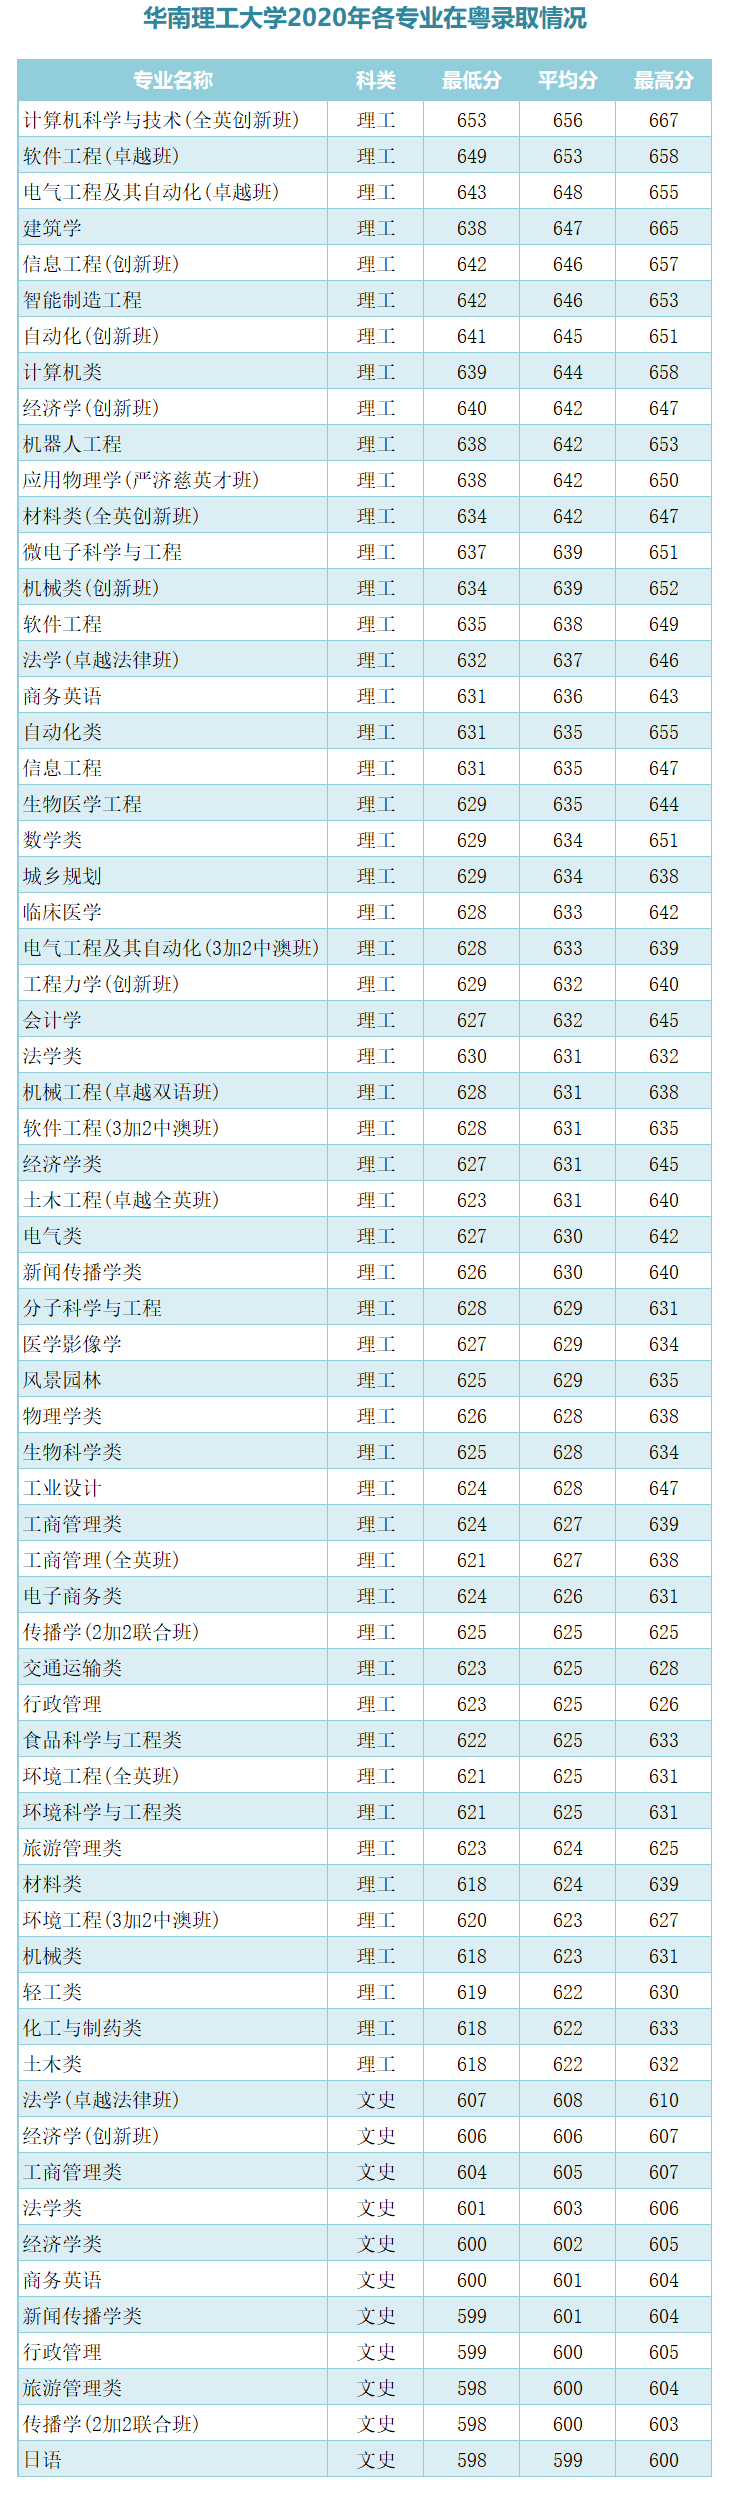 广东最新大学录排名_8所广东知名高校2020年录取人数、分数线及排名汇总